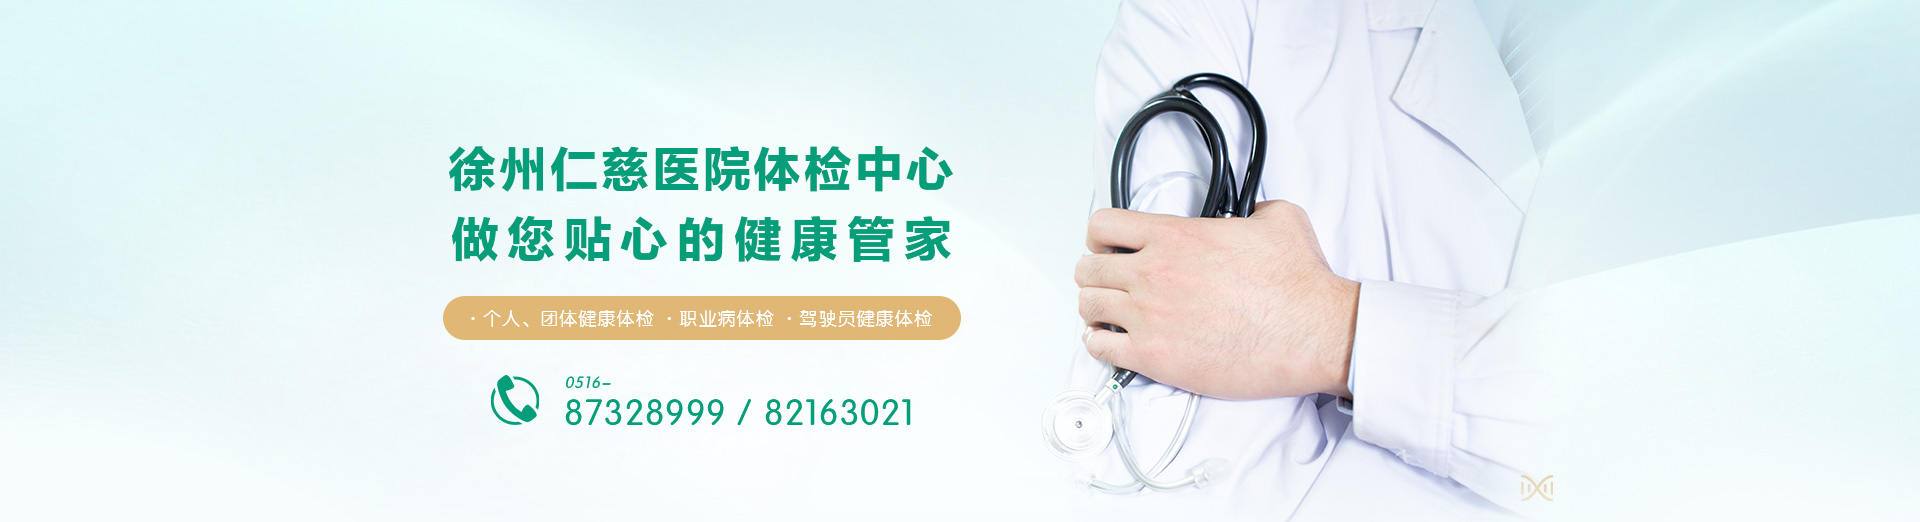 徐州仁慈医院体检中心 做您贴心的健康管家